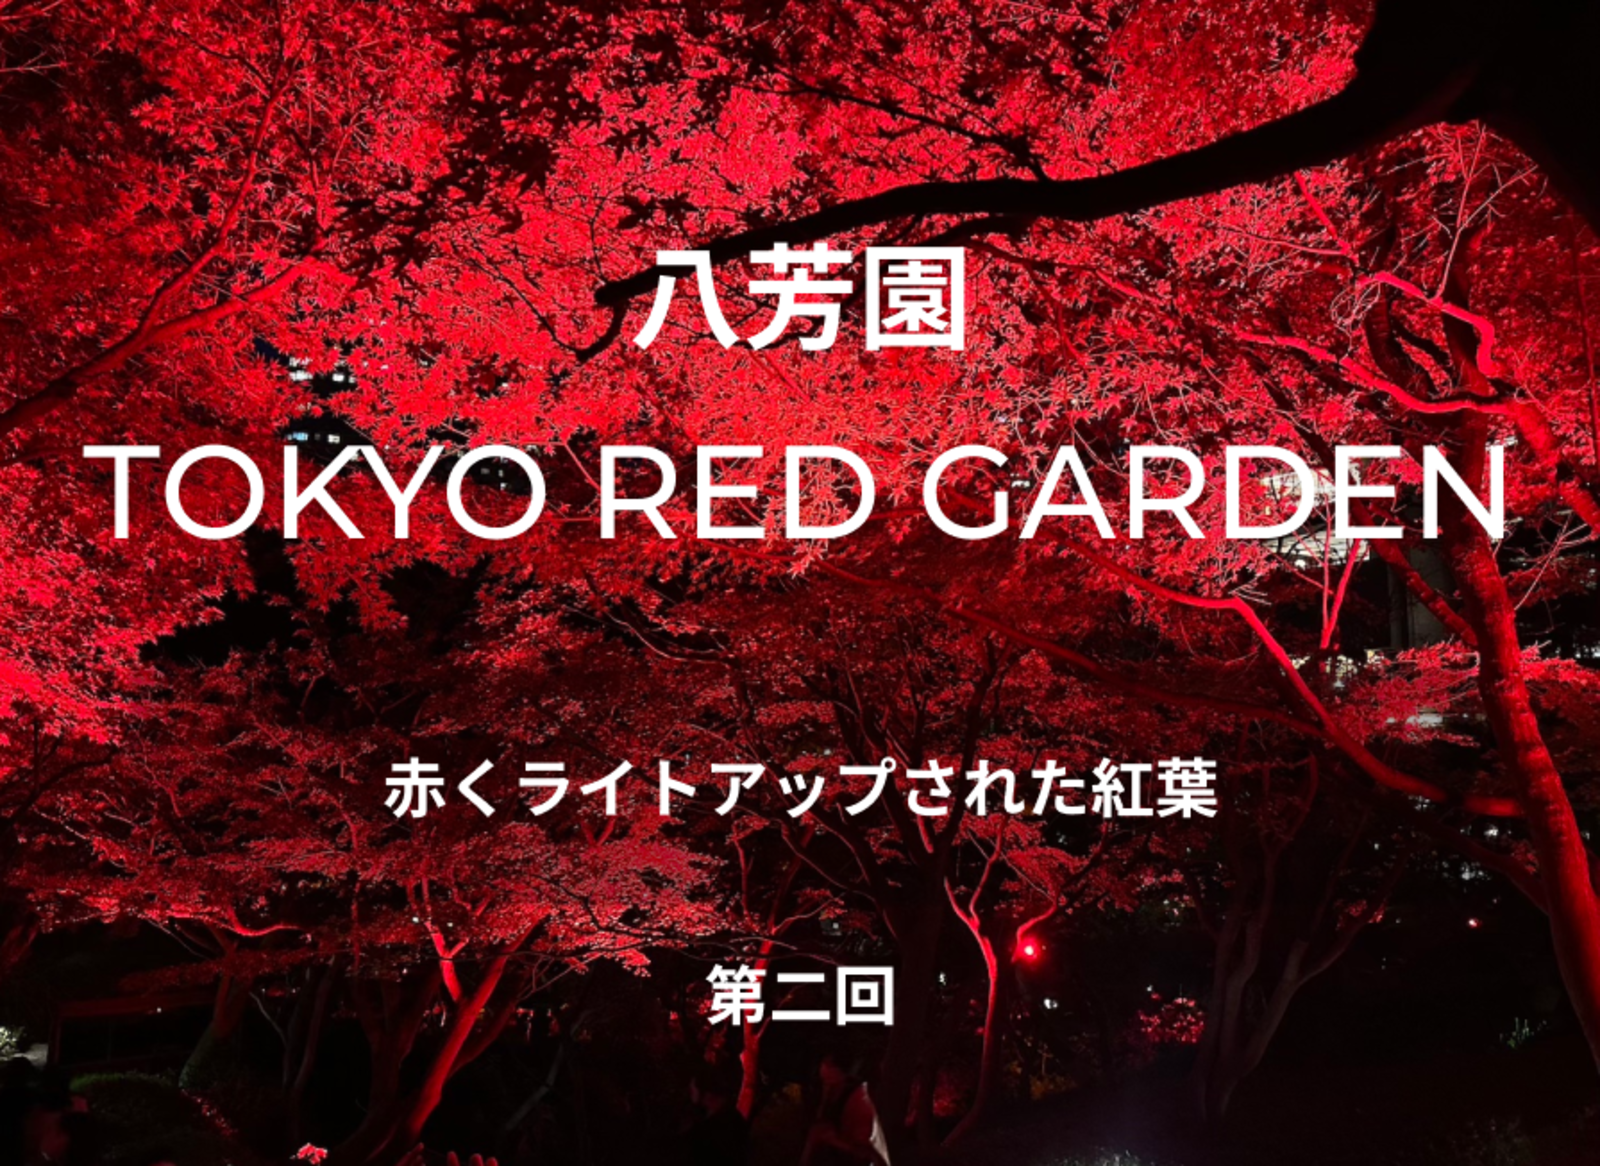 八芳園 TOKYO RED GARDENに行きましょう。赤くライトアップされた紅葉を見ながら散歩🍁【第二回】